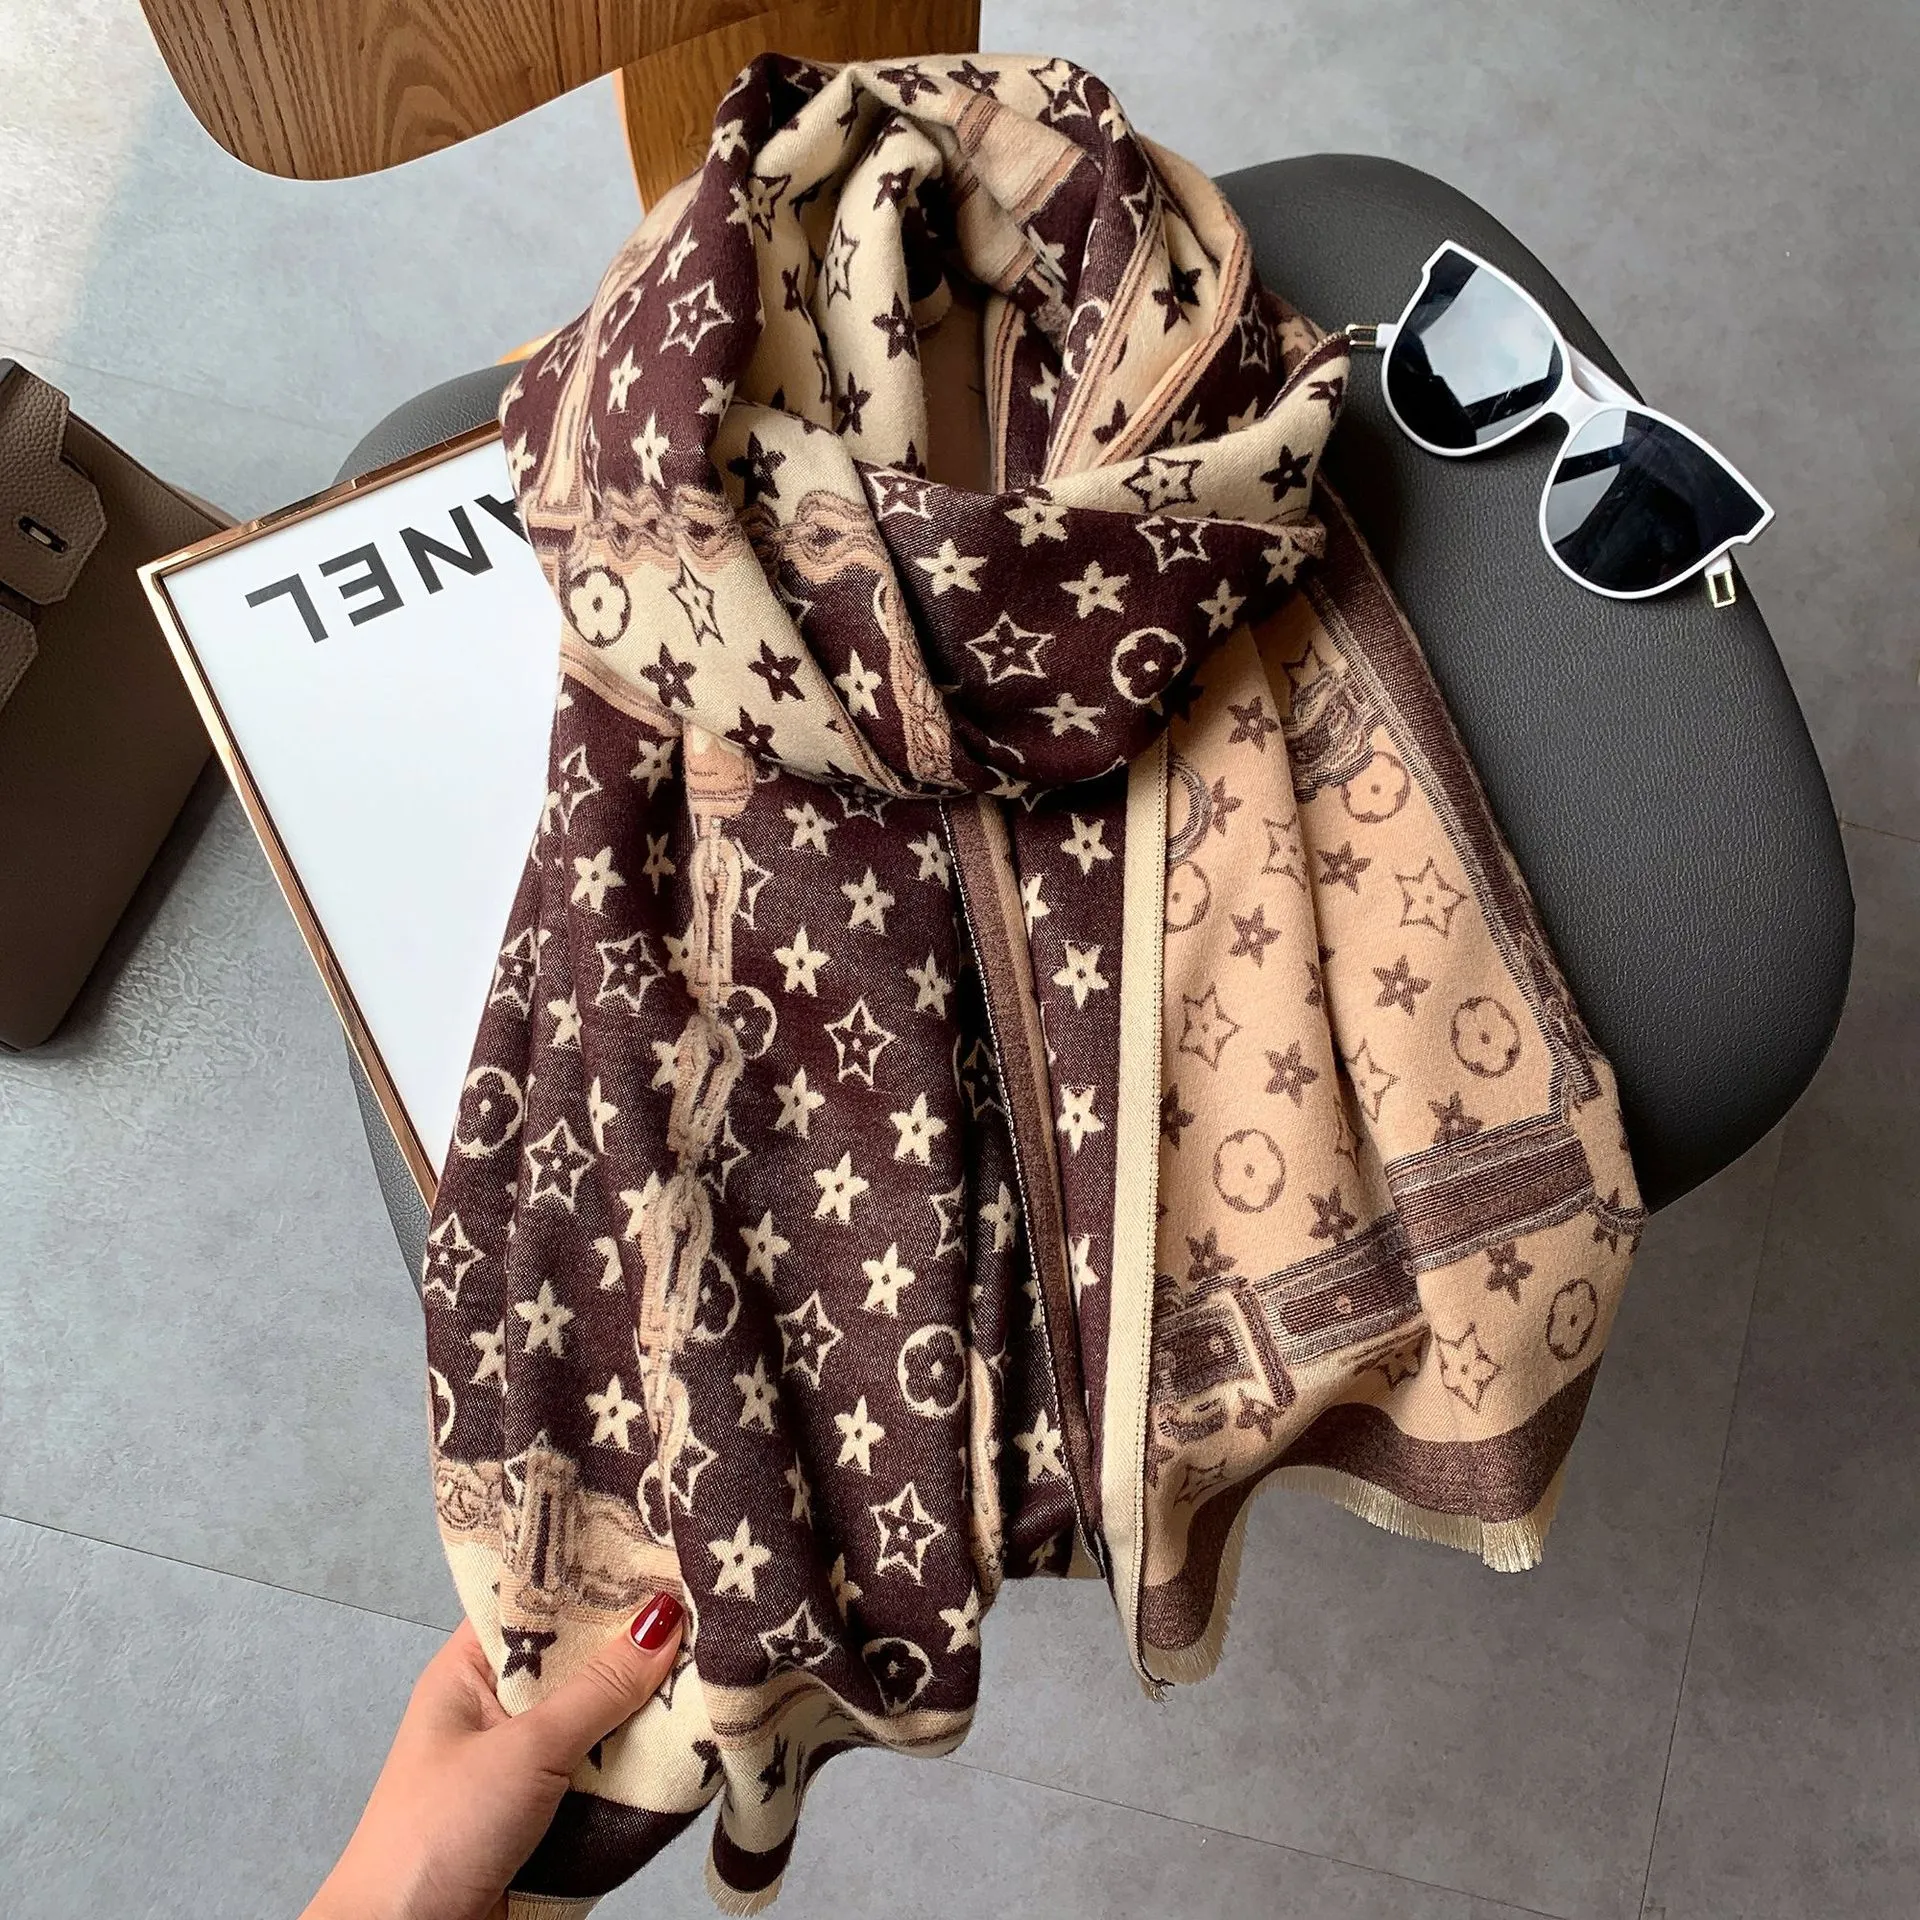 Kasjmier sjaal dames warme sjaal in de herfst winterhoofd sjaals voor vrouwen 180*65 cm